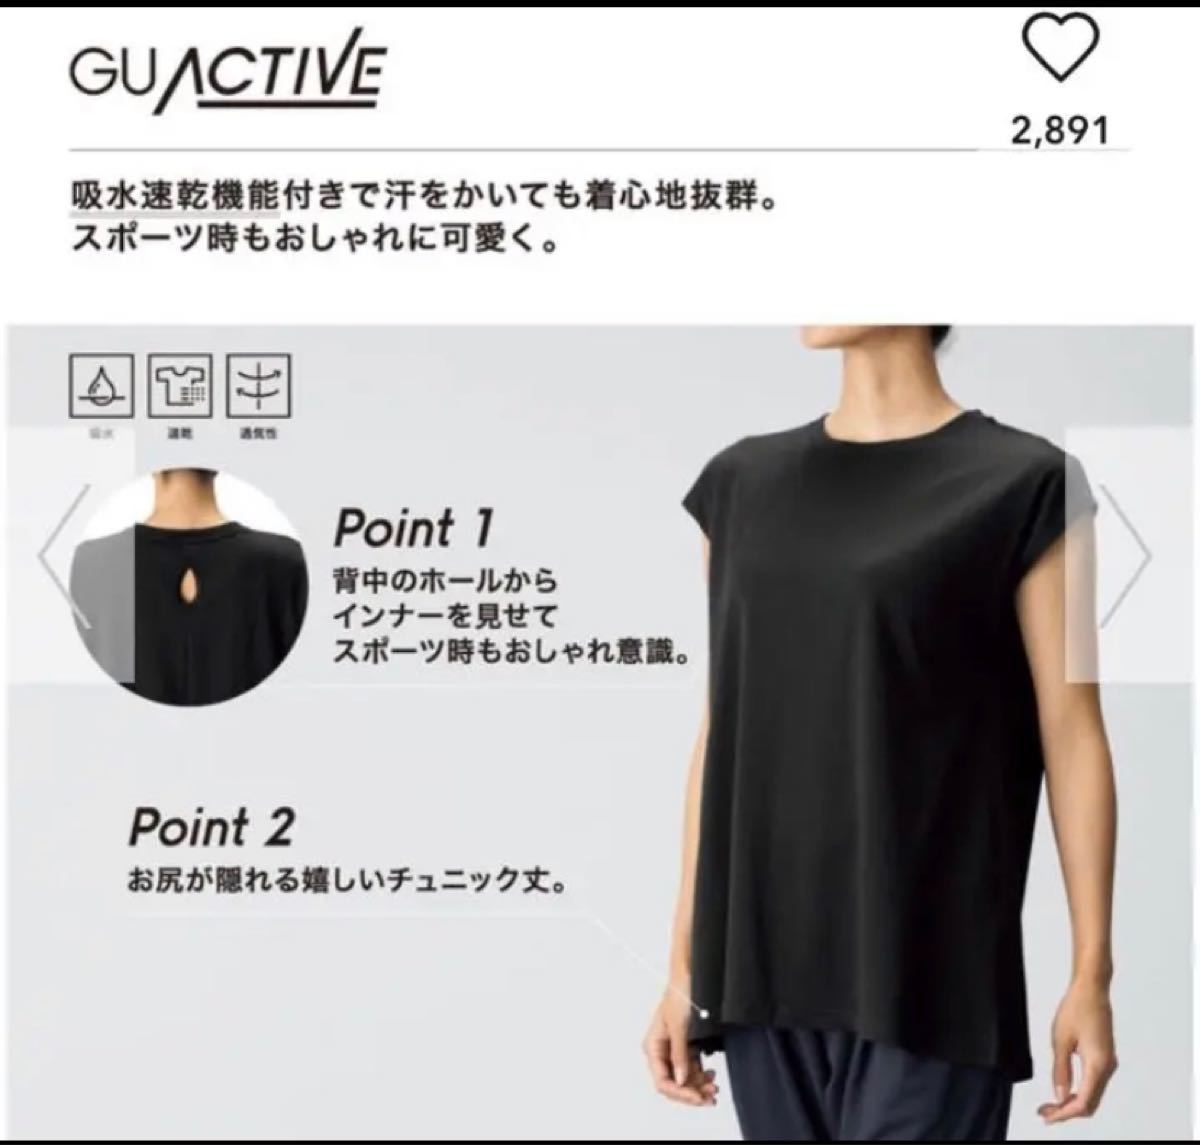 ジーユーGU(ユニクロ)カジュアルスポーティーランニングヨガタンクTシャツ黒色S